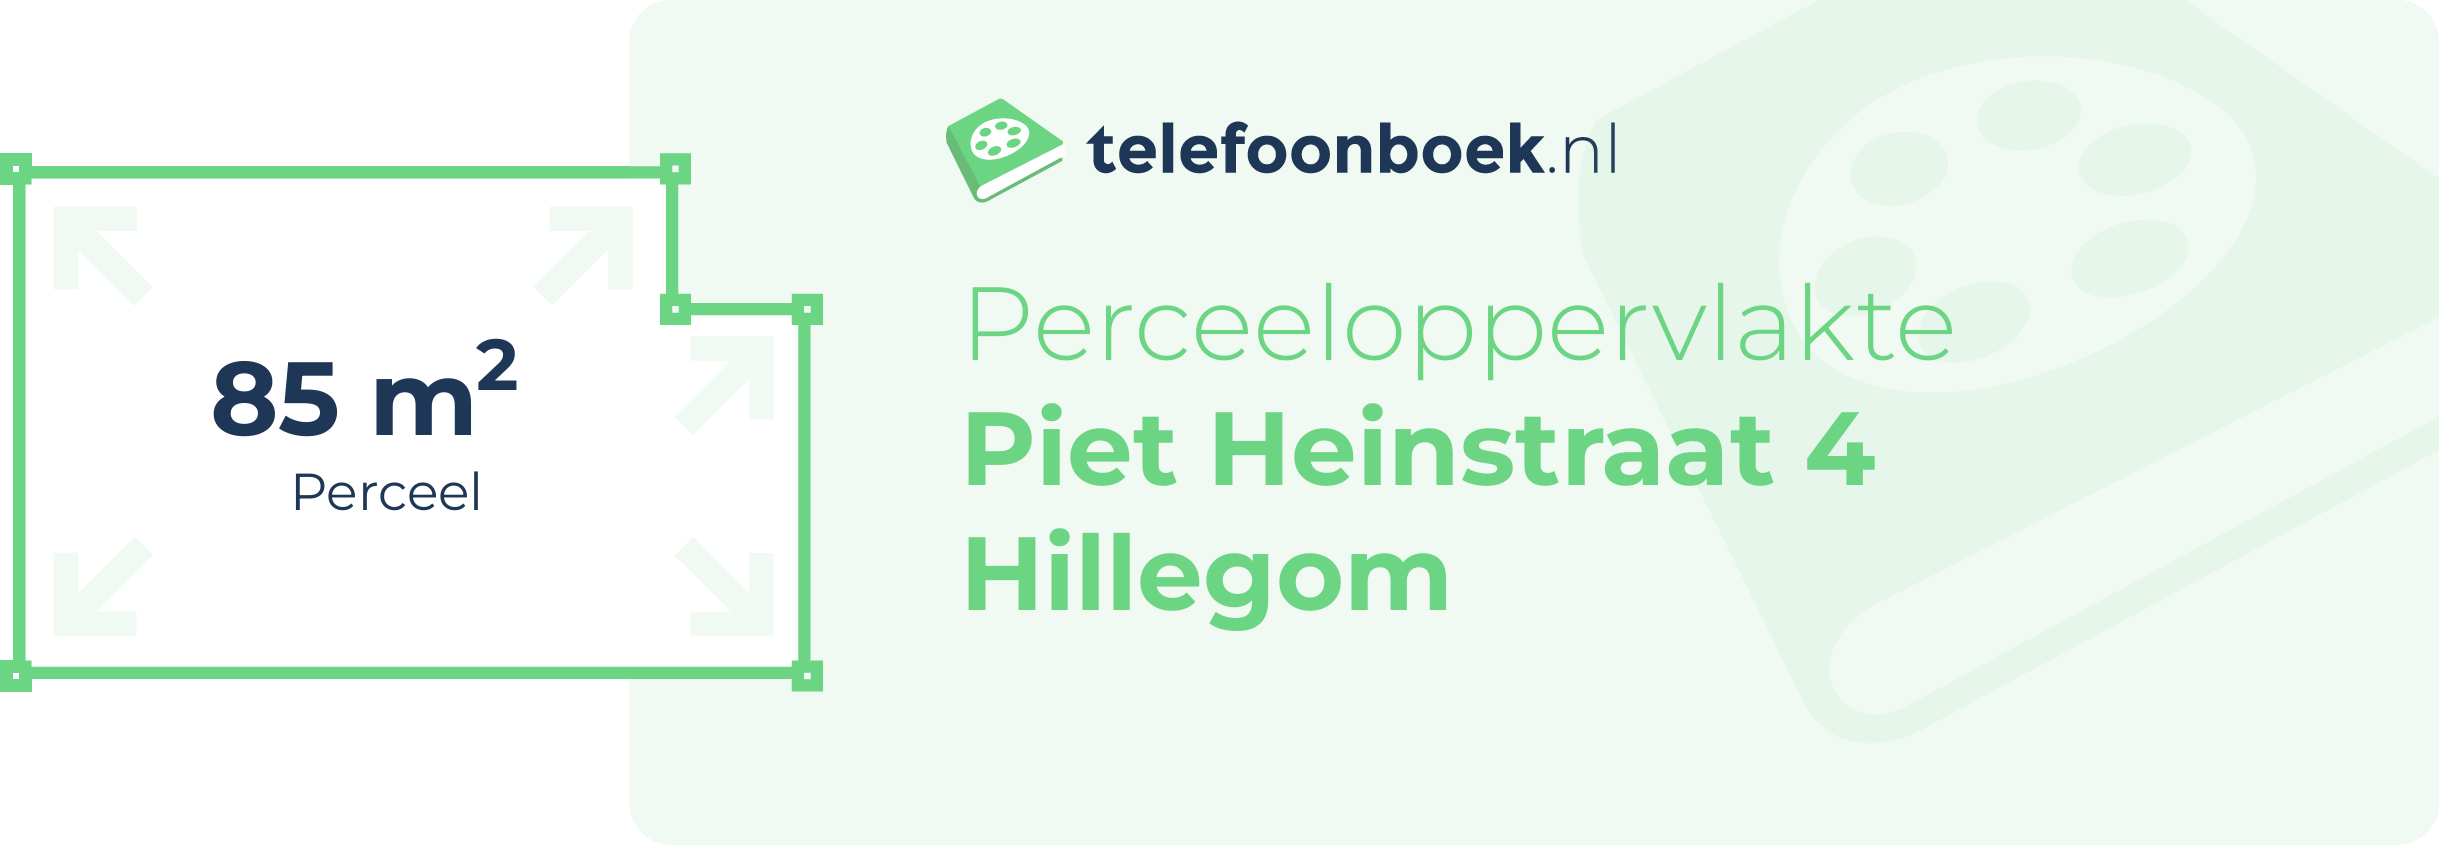 Perceeloppervlakte Piet Heinstraat 4 Hillegom